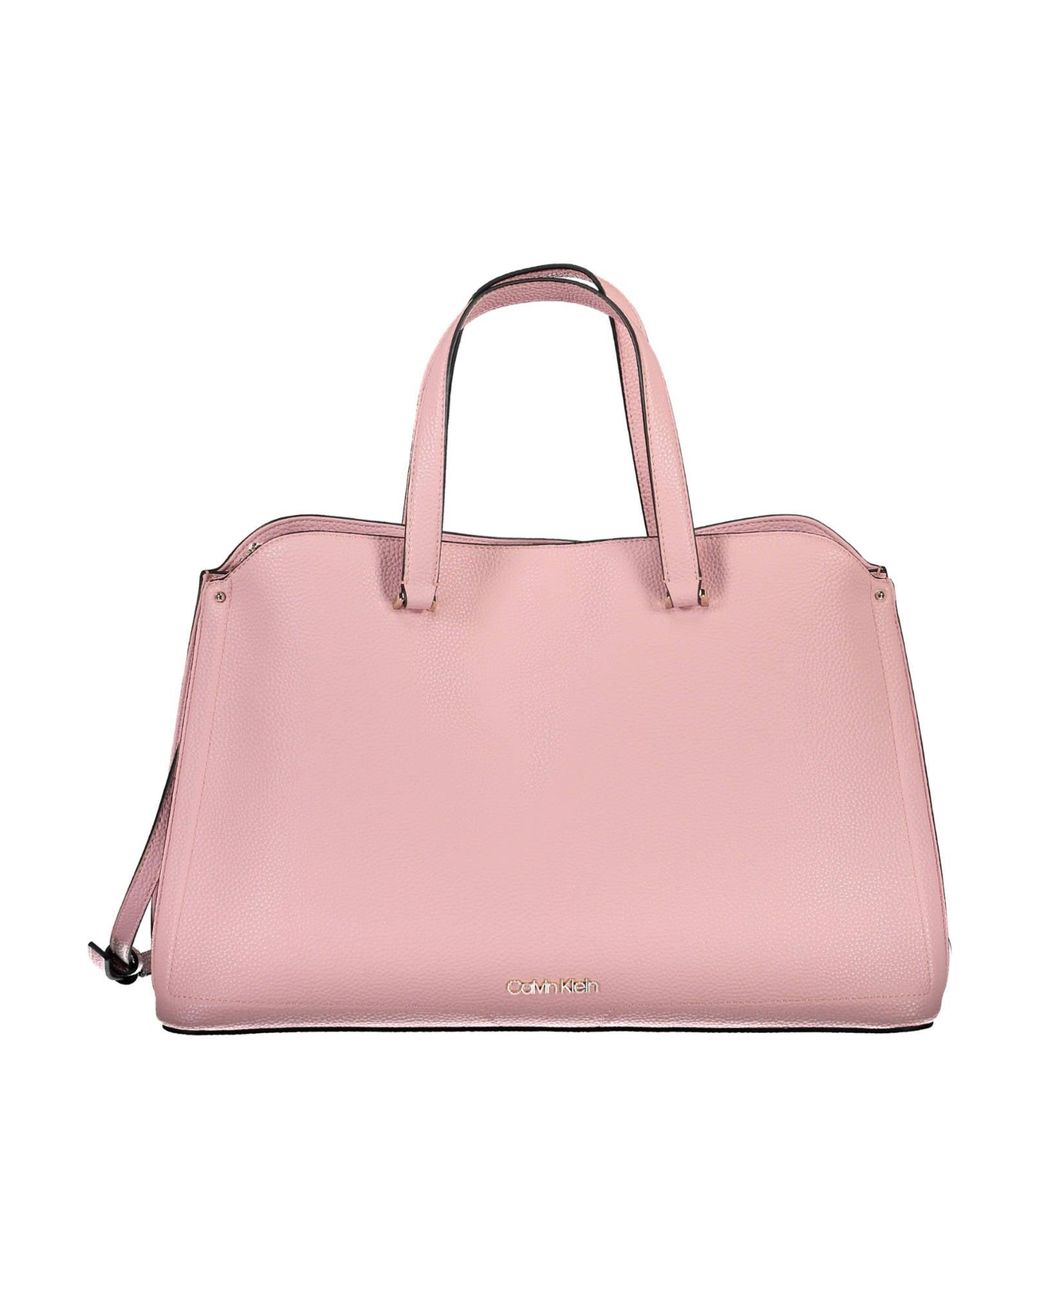 Calvin Klein Handbag in Pink | Lyst